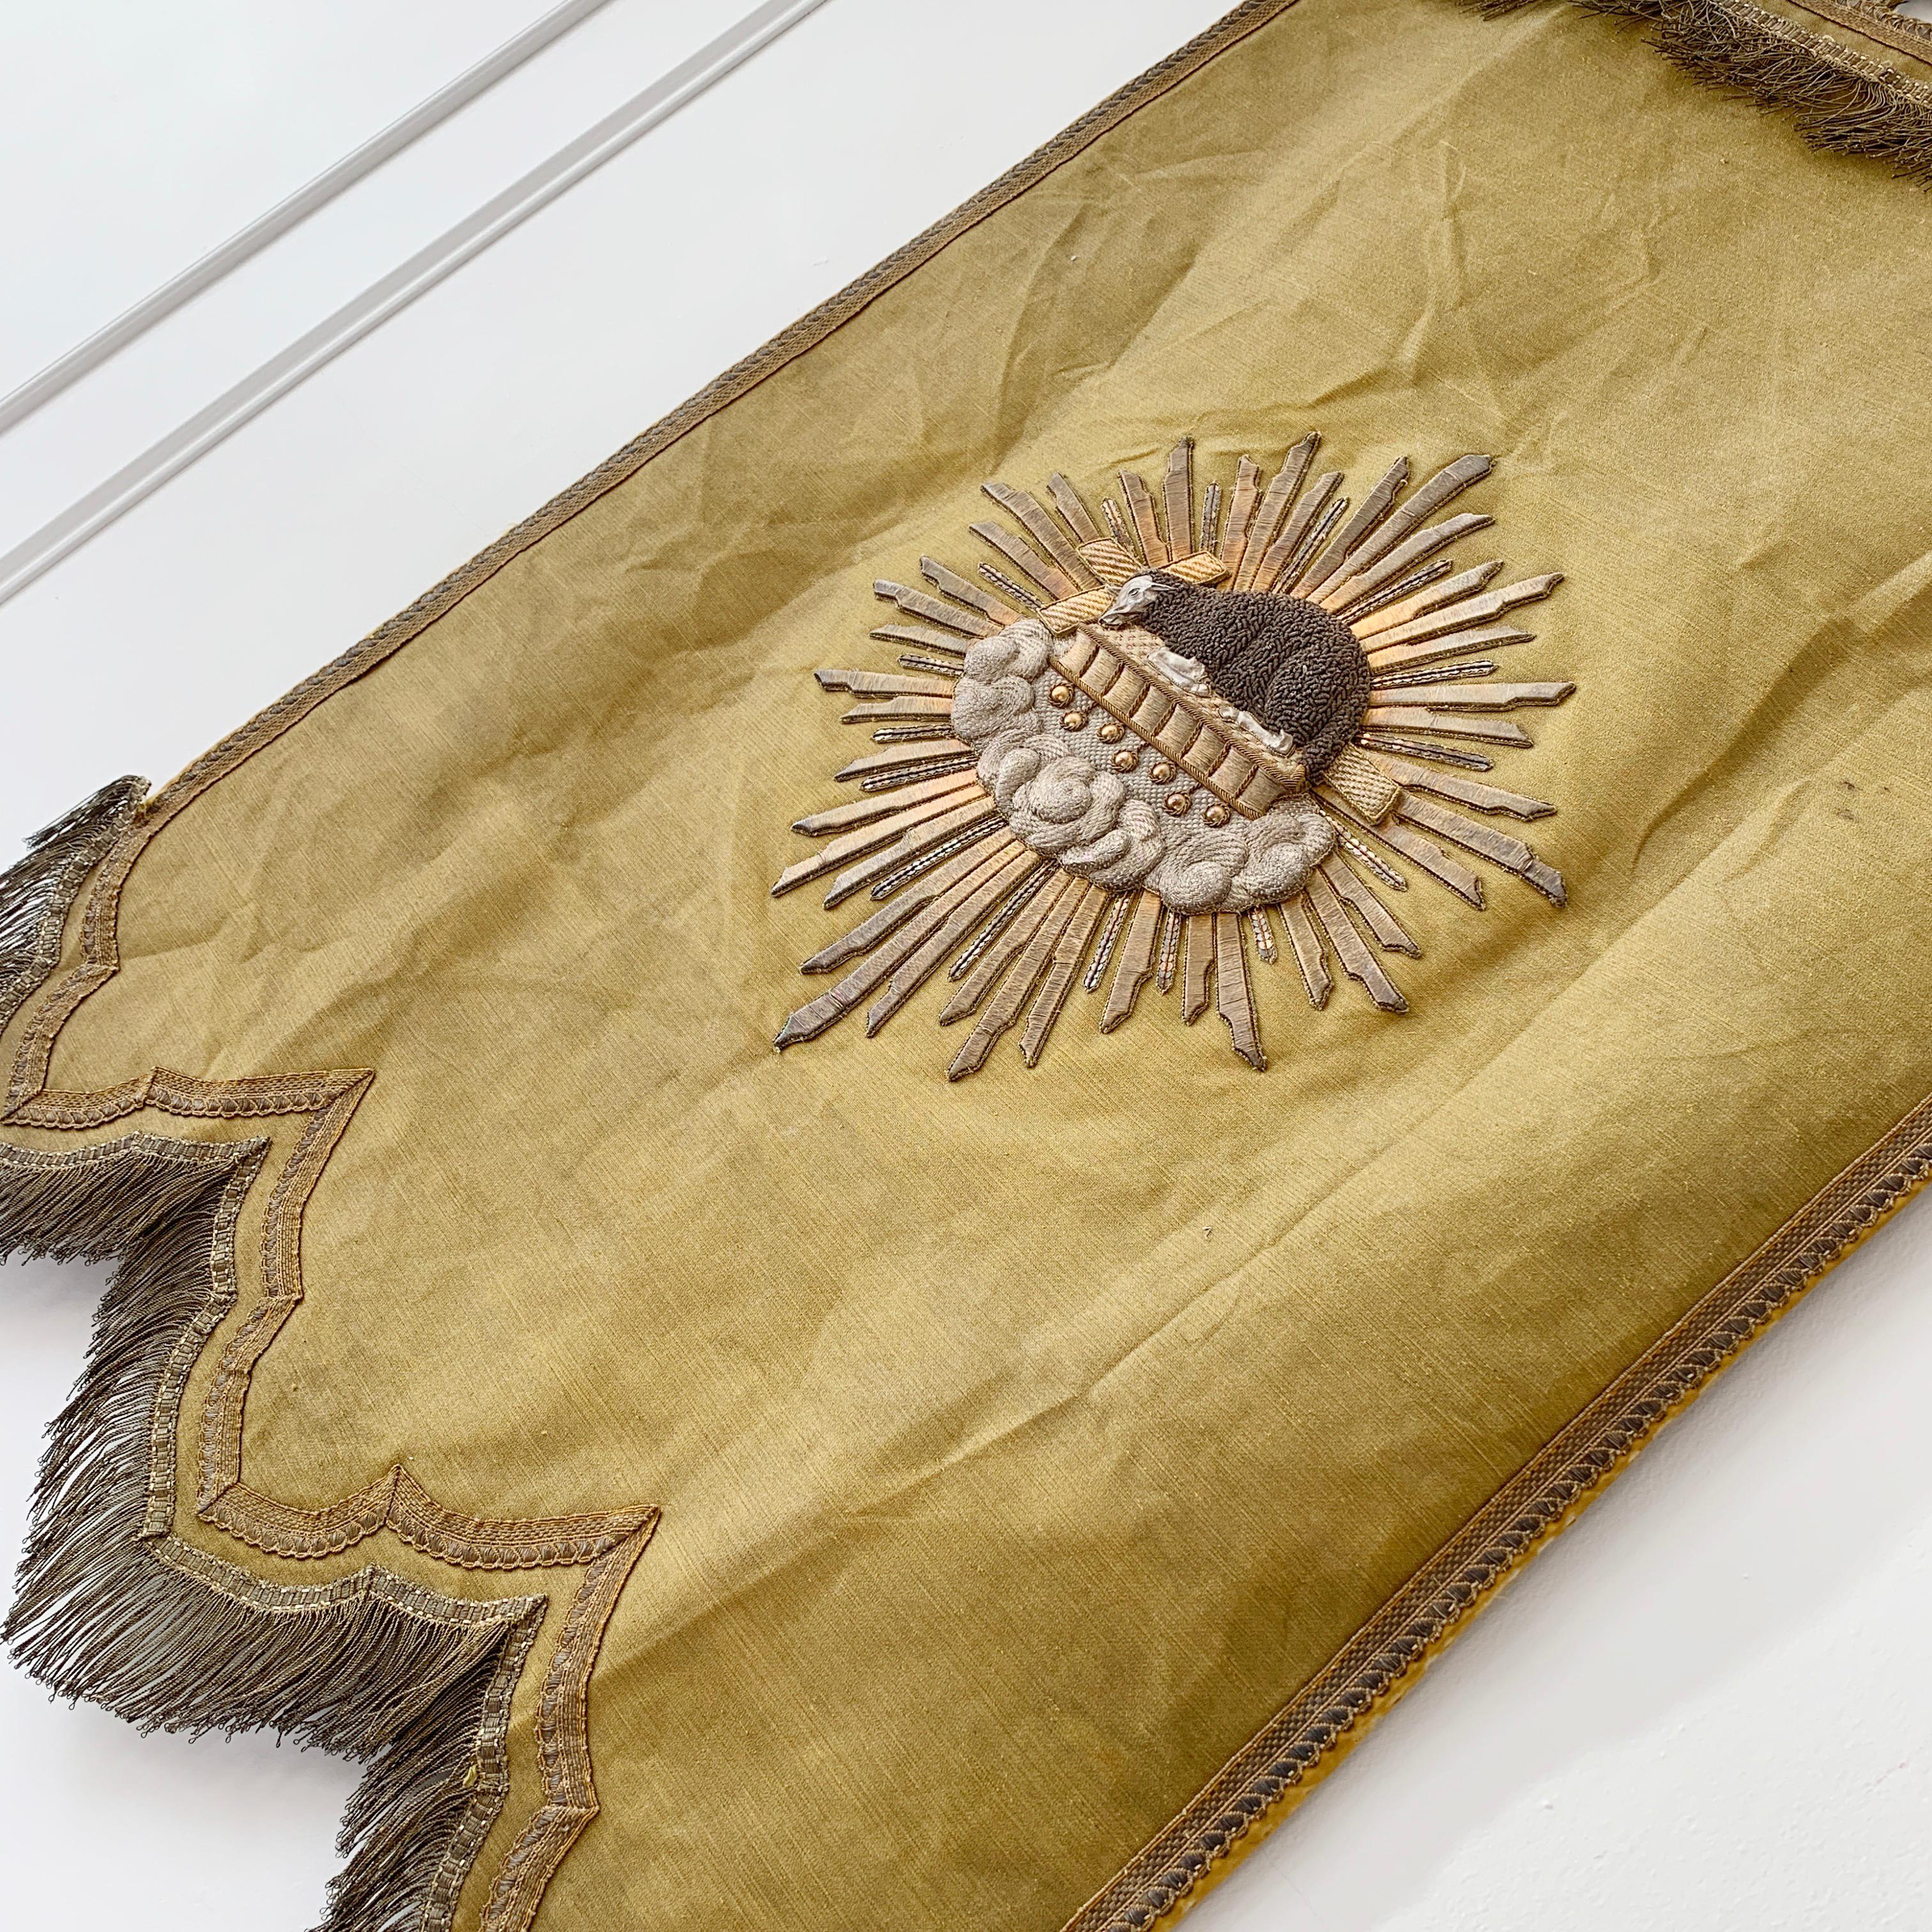 Fabric Agnus Dei, Antique French Religious Banner, 1800s